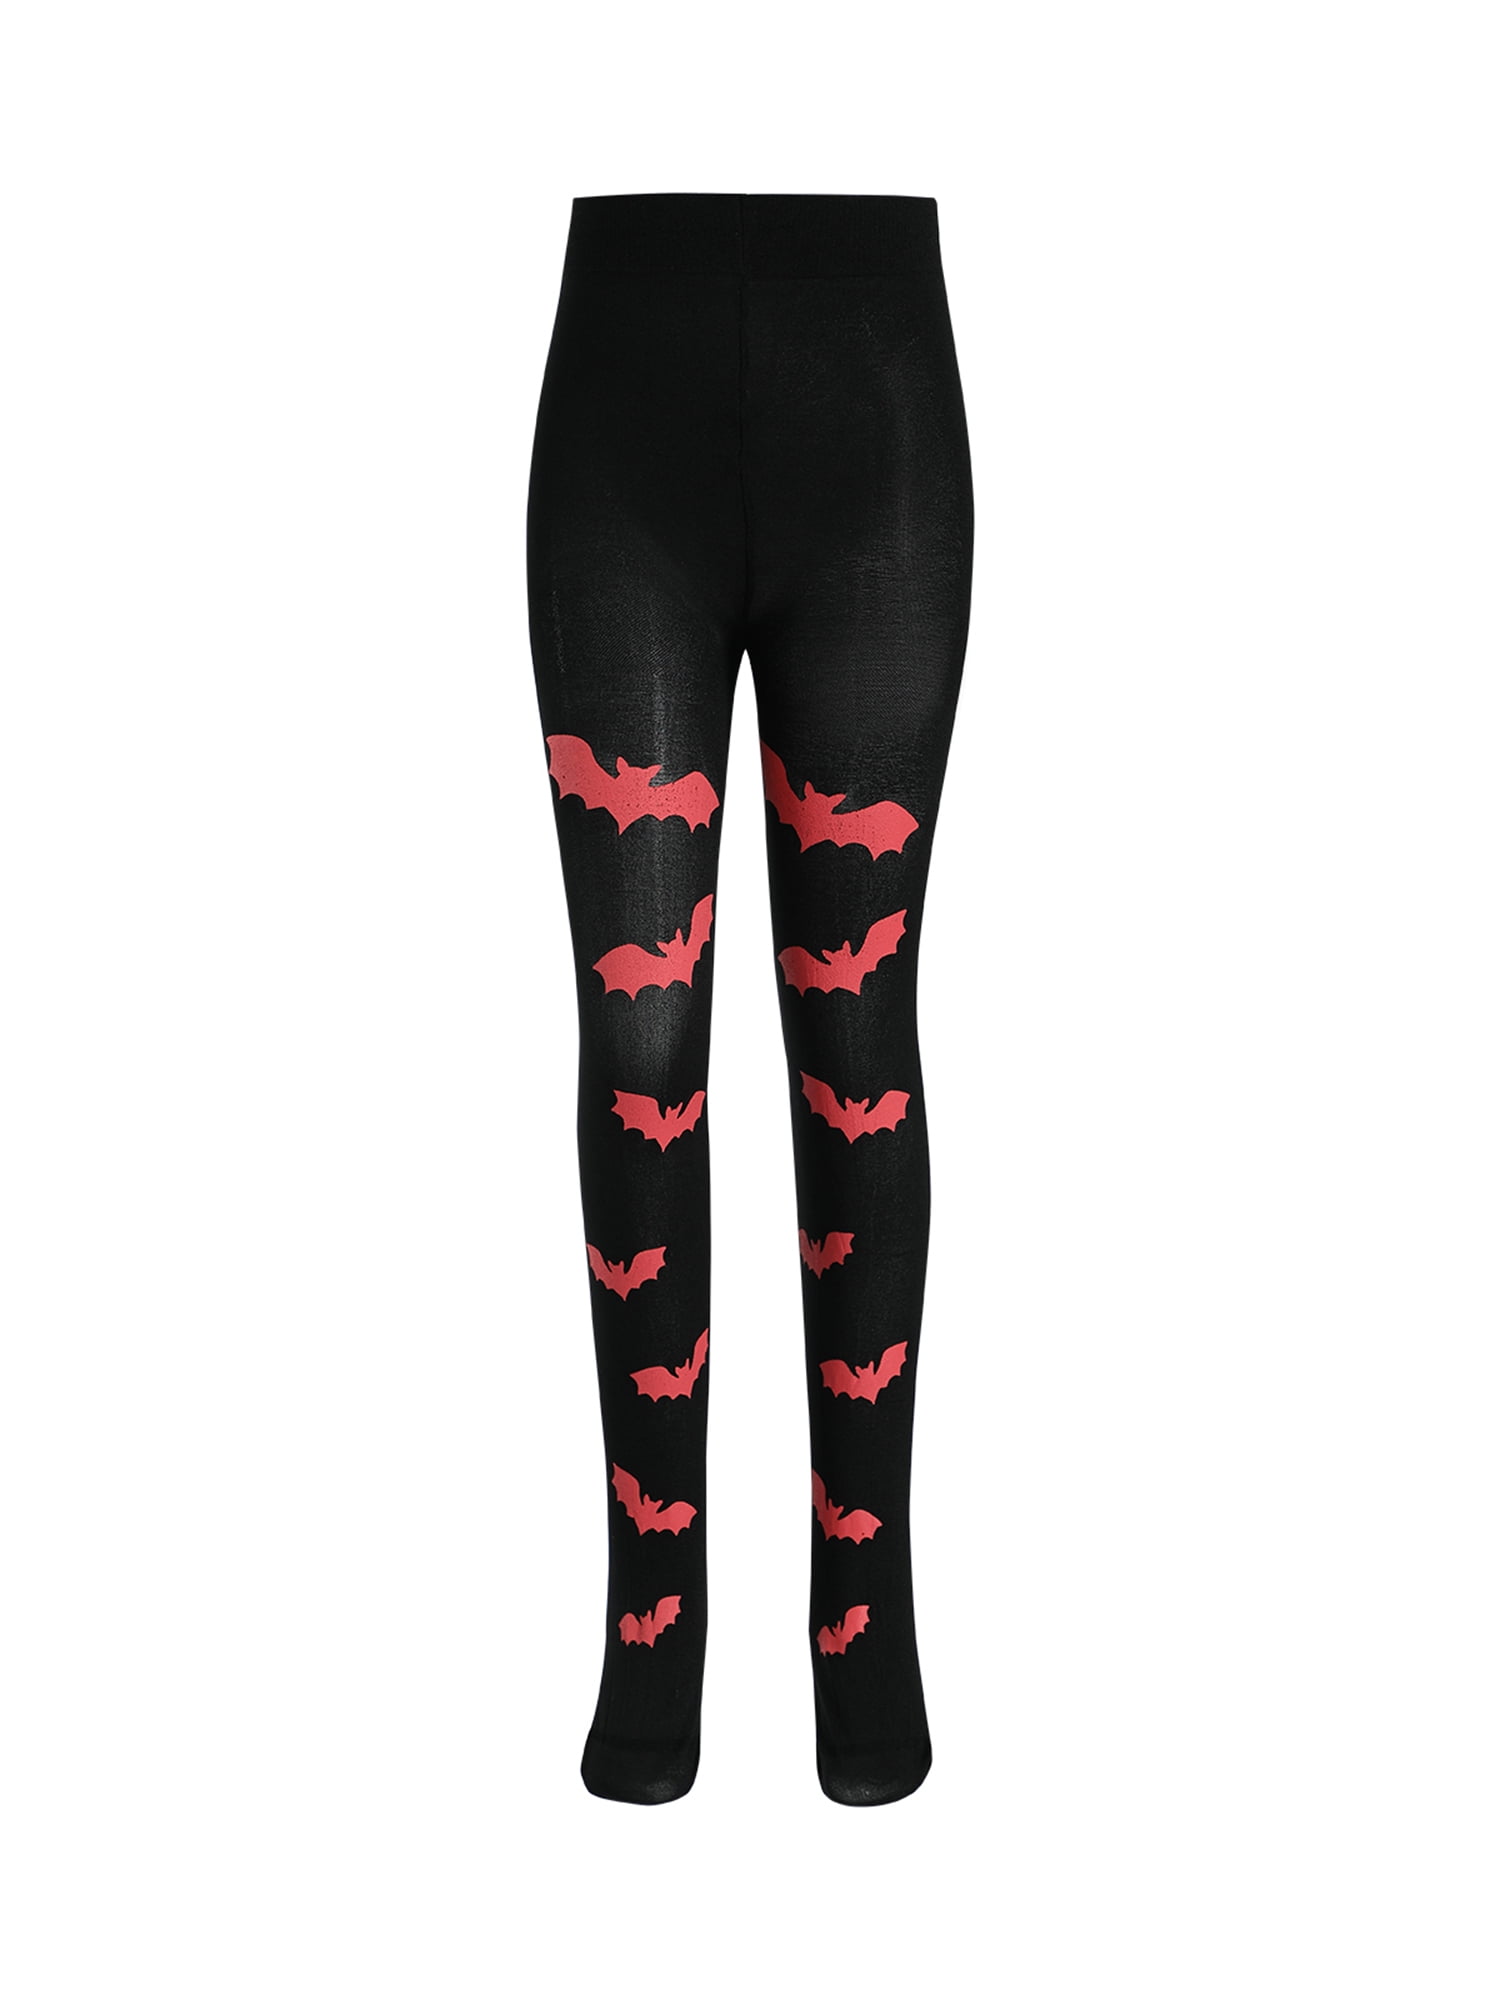 Frobukio Kids Girls Halloween Printed Pantyhose Elastic Waist Warm Socks  Stockings Leggings Pants Black Red Bat 4-7 Years 